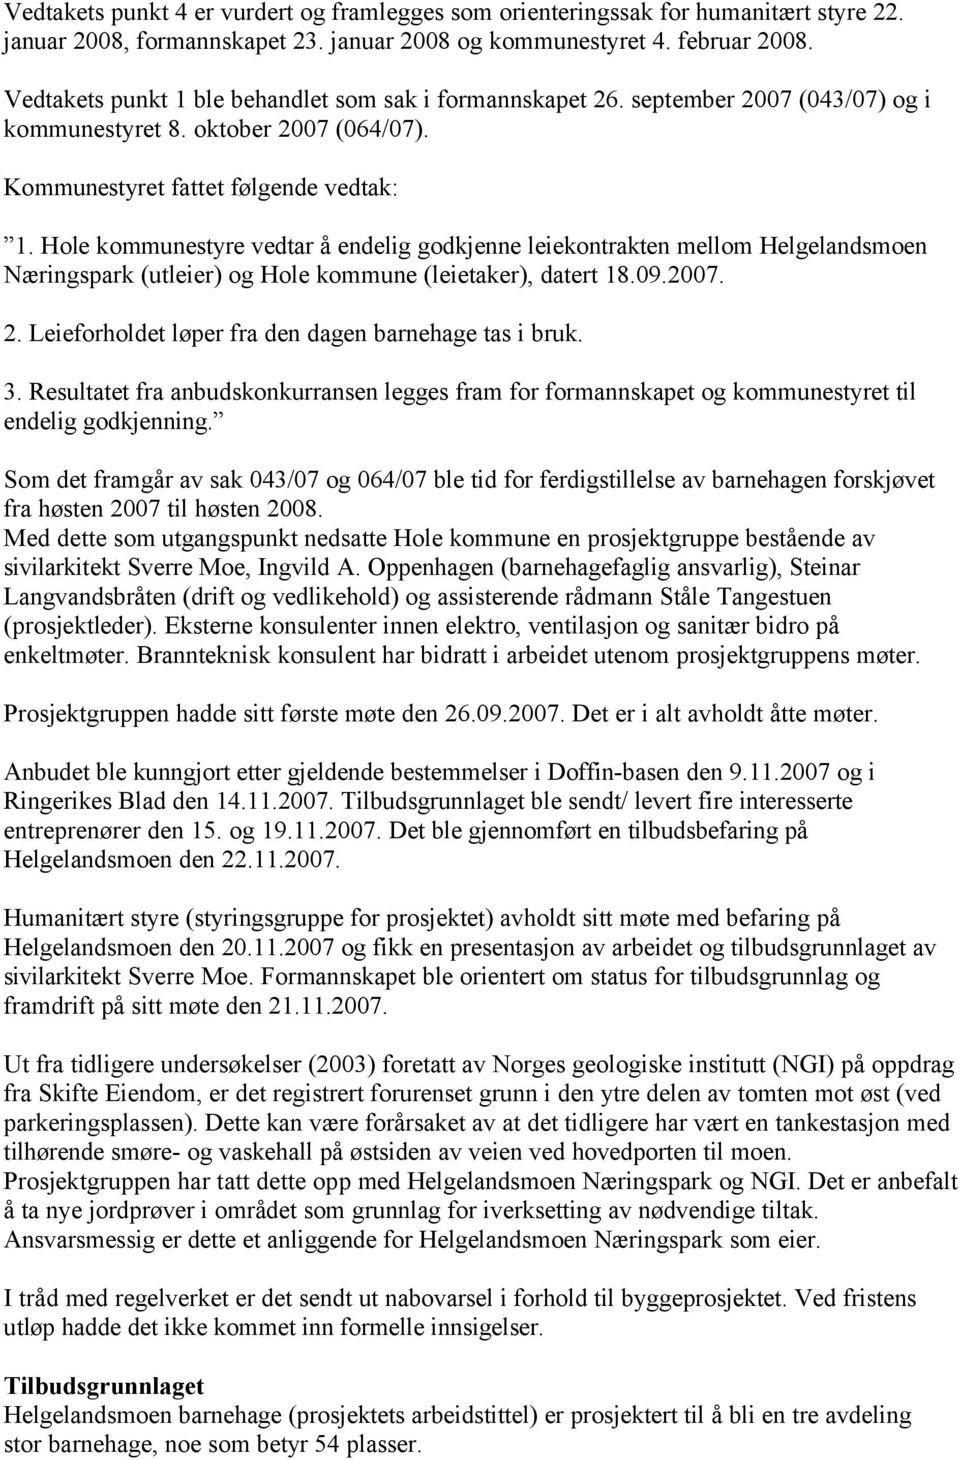 Hole kommunestyre vedtar å endelig godkjenne leiekontrakten mellom Helgelandsmoen Næringspark (utleier) og Hole kommune (leietaker), datert 18.09.2007. 2.